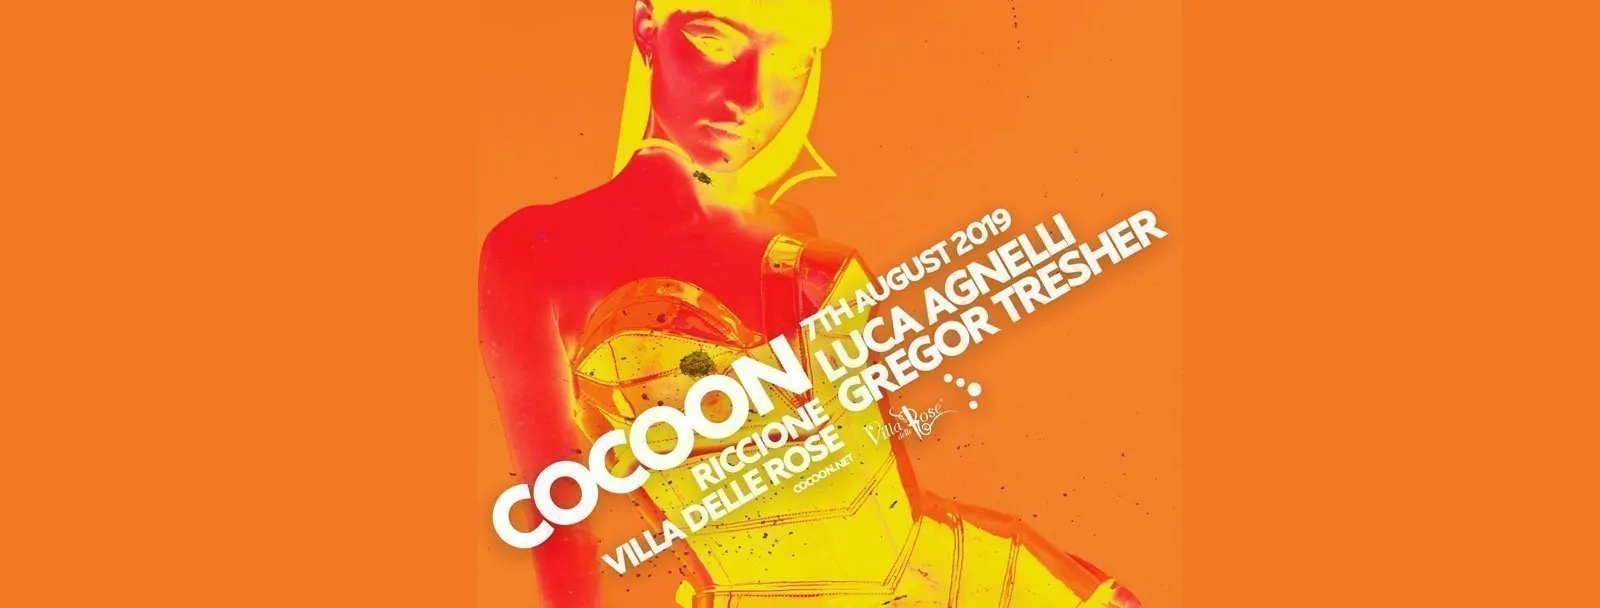 Coccon Riccione 07 08 2019 Ticket E Pacchetti Hotel